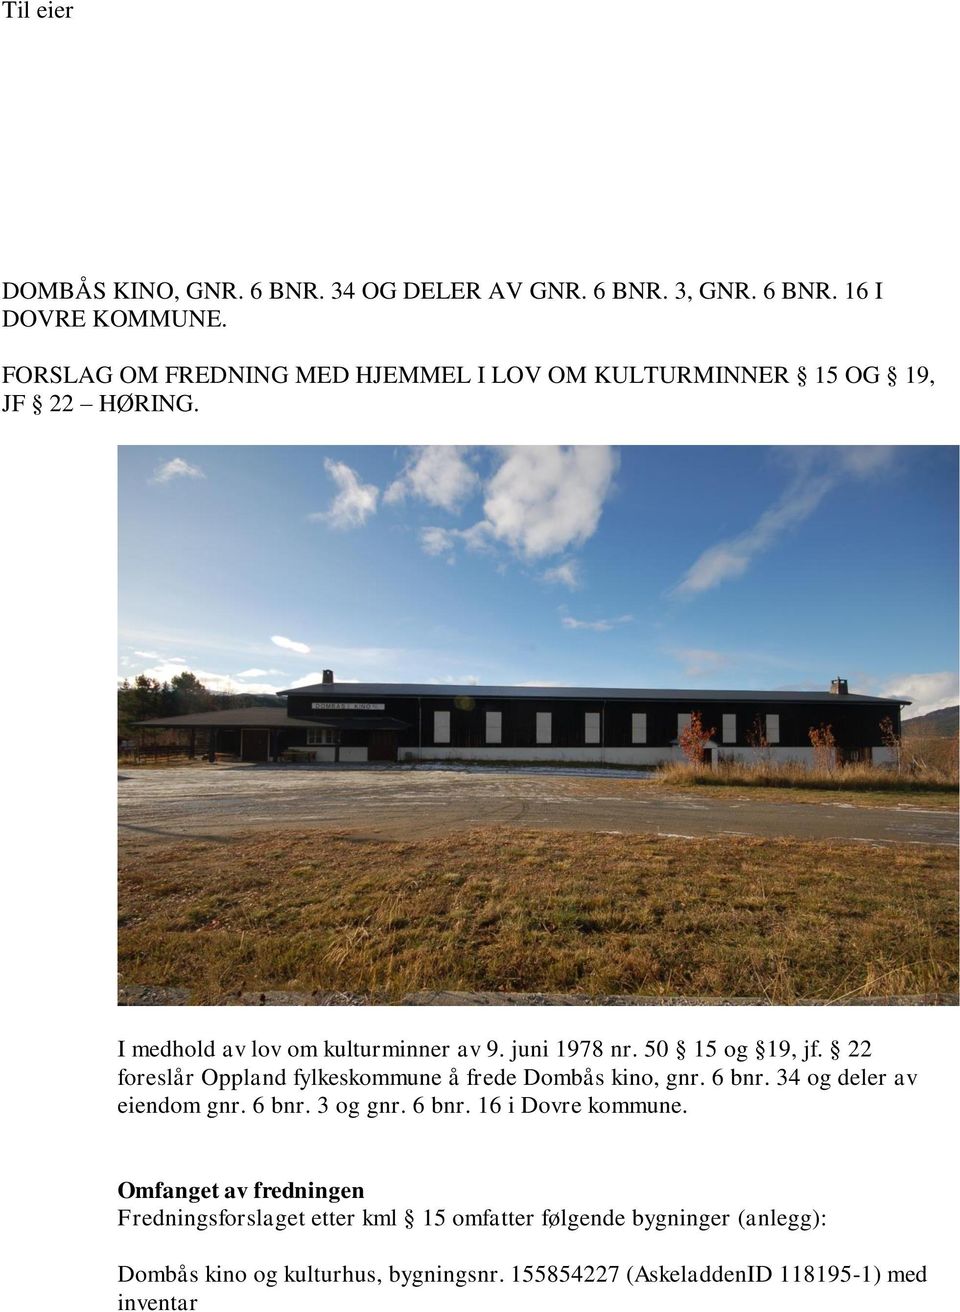 50 15 og 19, jf. 22 foreslår Oppland fylkeskommune å frede Dombås kino, gnr. 6 bnr. 34 og deler av eiendom gnr. 6 bnr. 3 og gnr. 6 bnr. 16 i Dovre kommune.